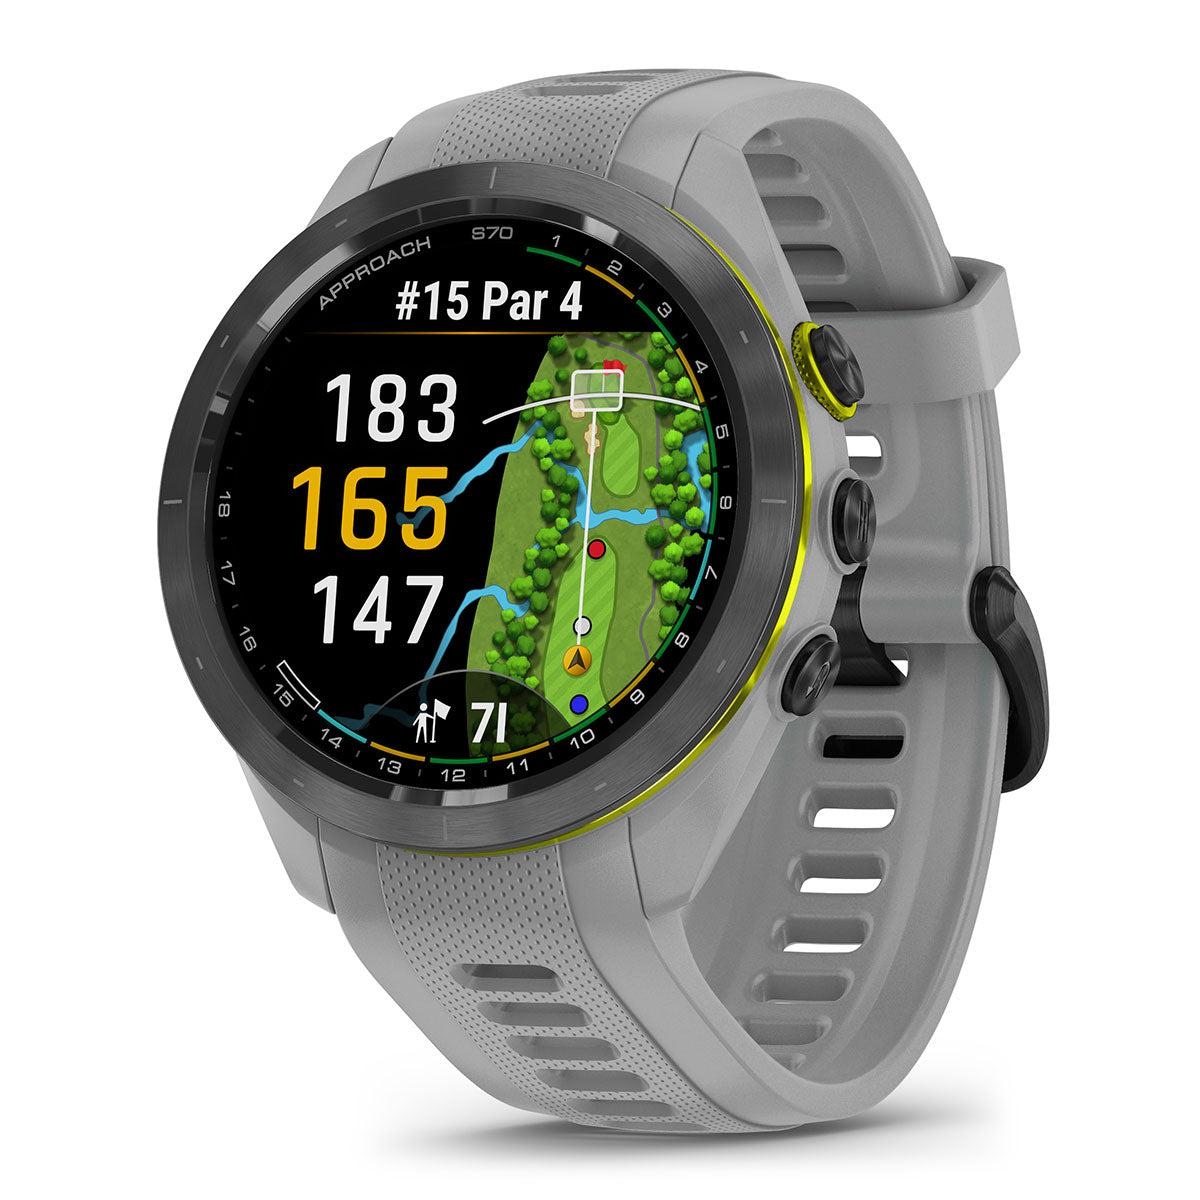 Garmin Approach S70 42mm Golf GPS Watch